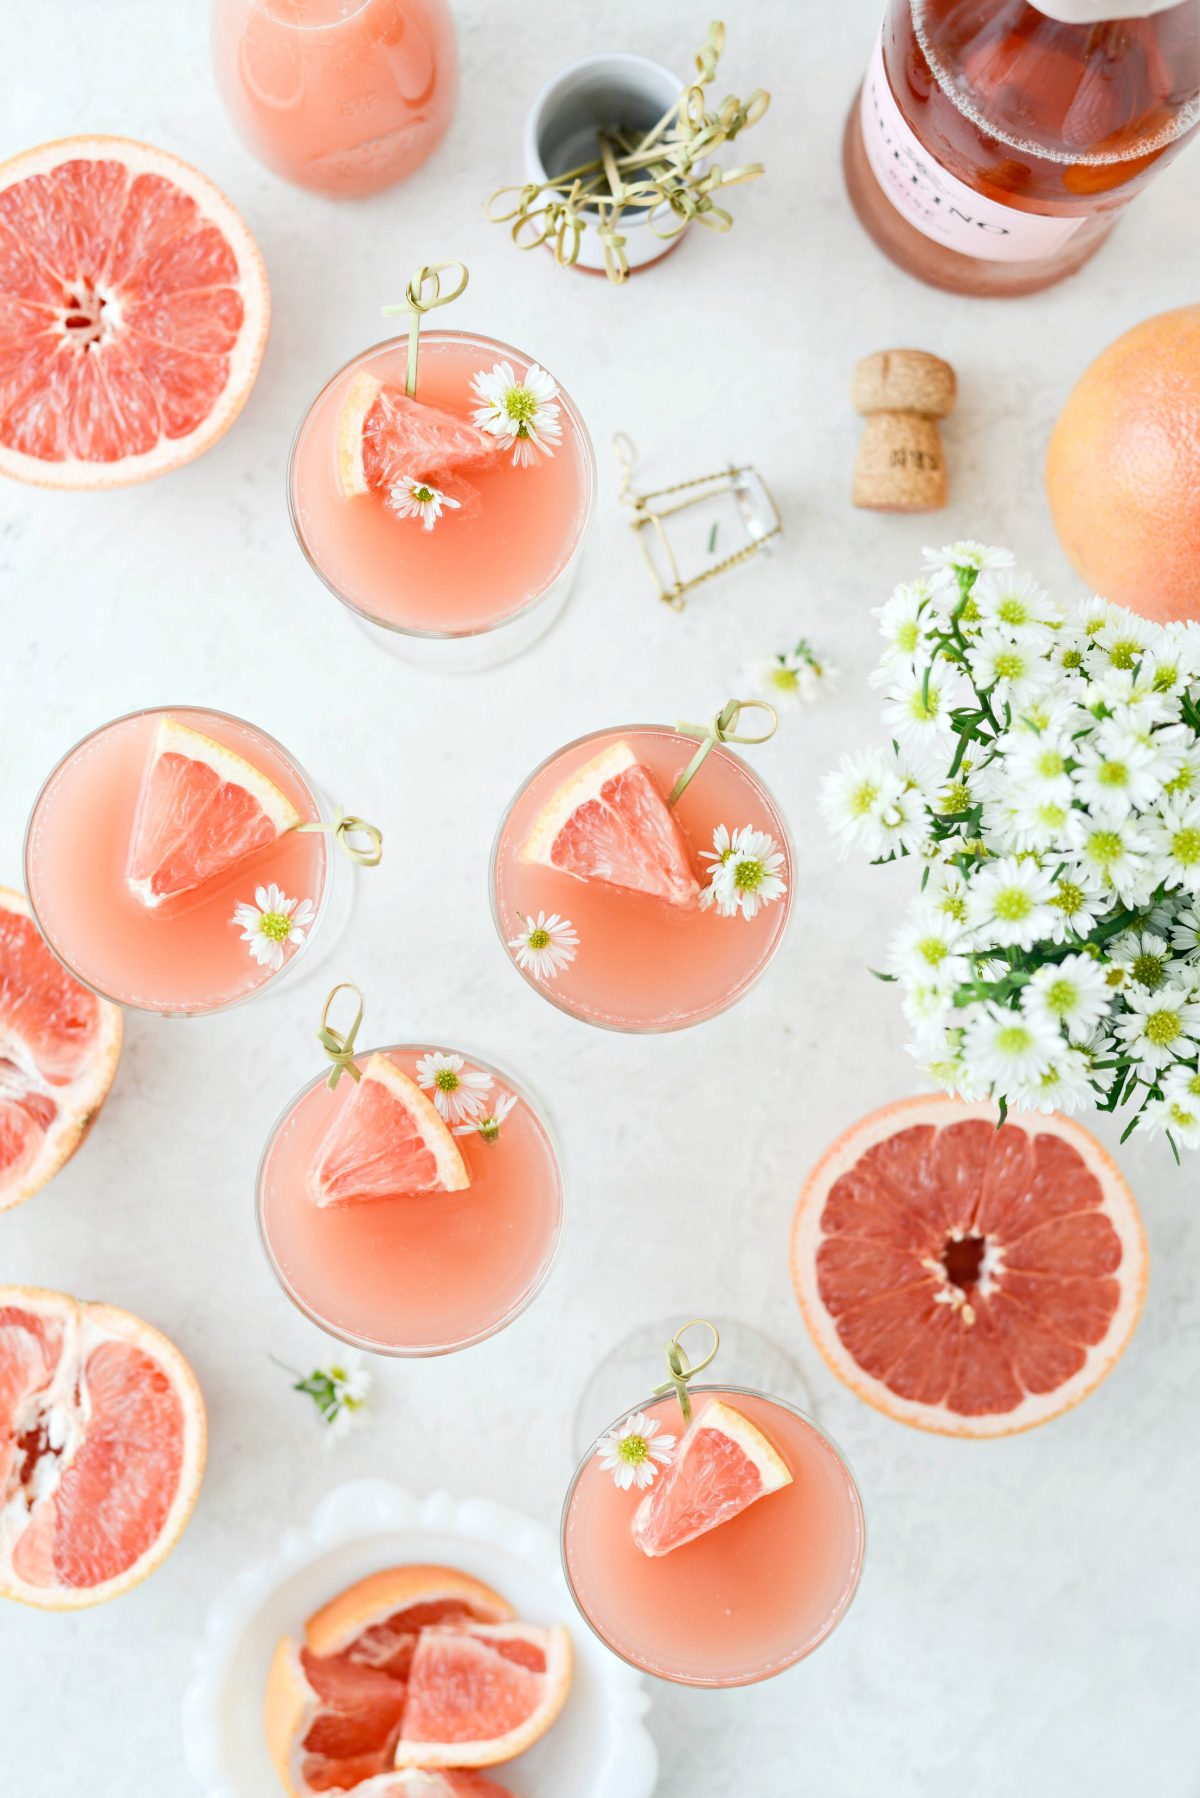 grapefrukt Rosacillimimosas l SimplyScratch.com #vuxen #dryck # grapefrukt #rose #mimosa # påsk #brunch #mothersday